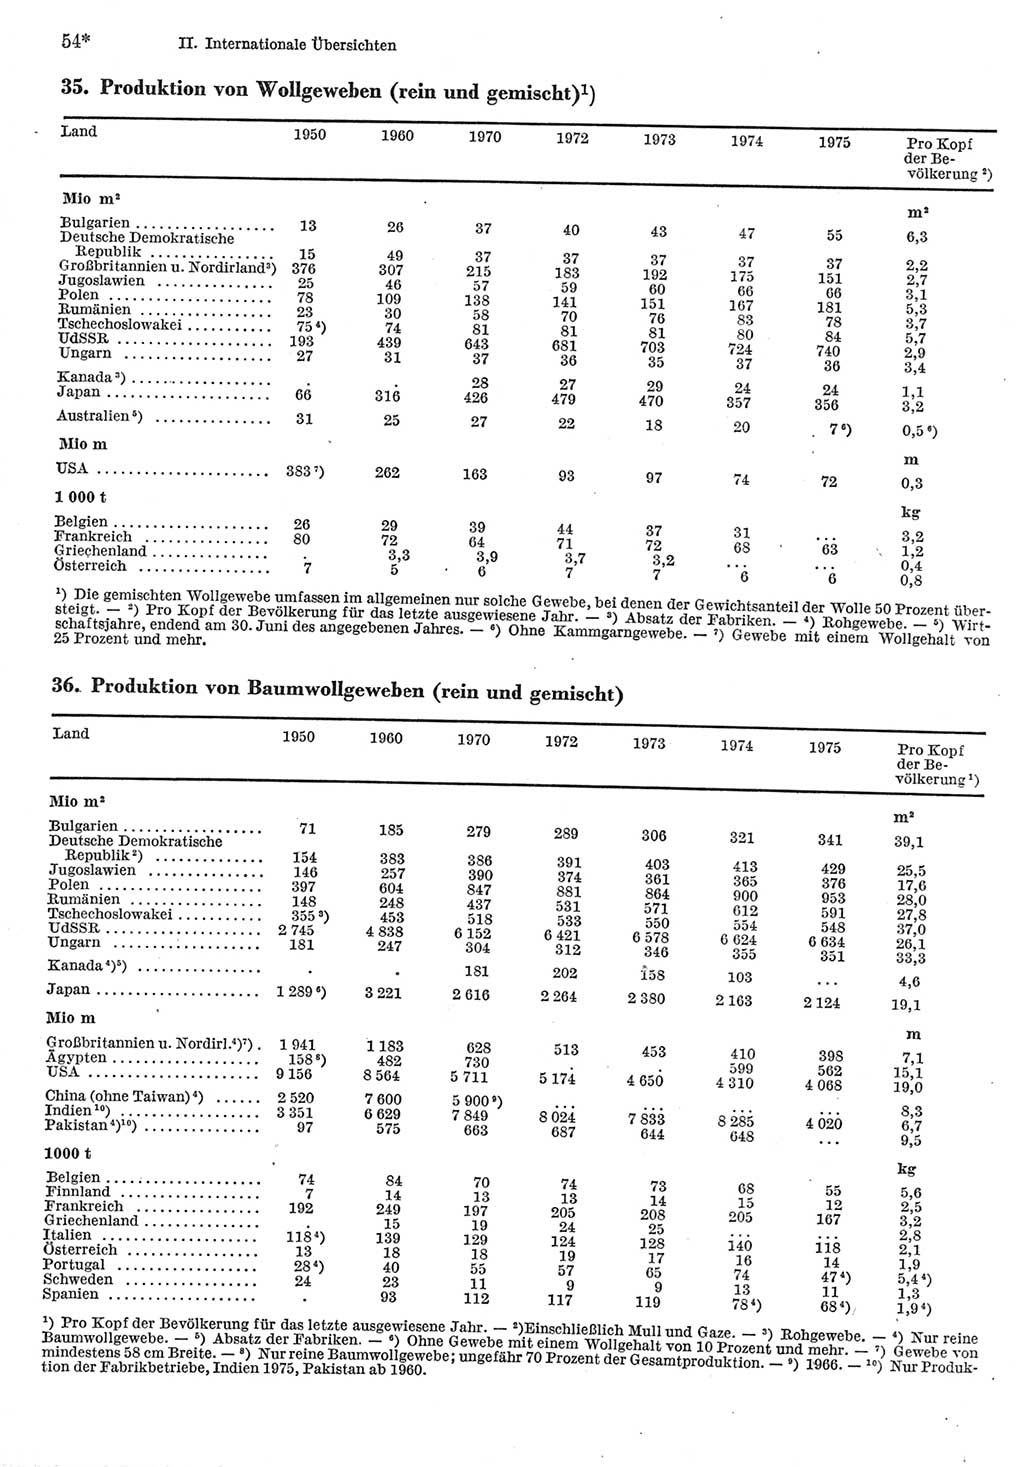 Statistisches Jahrbuch der Deutschen Demokratischen Republik (DDR) 1977, Seite 54 (Stat. Jb. DDR 1977, S. 54)